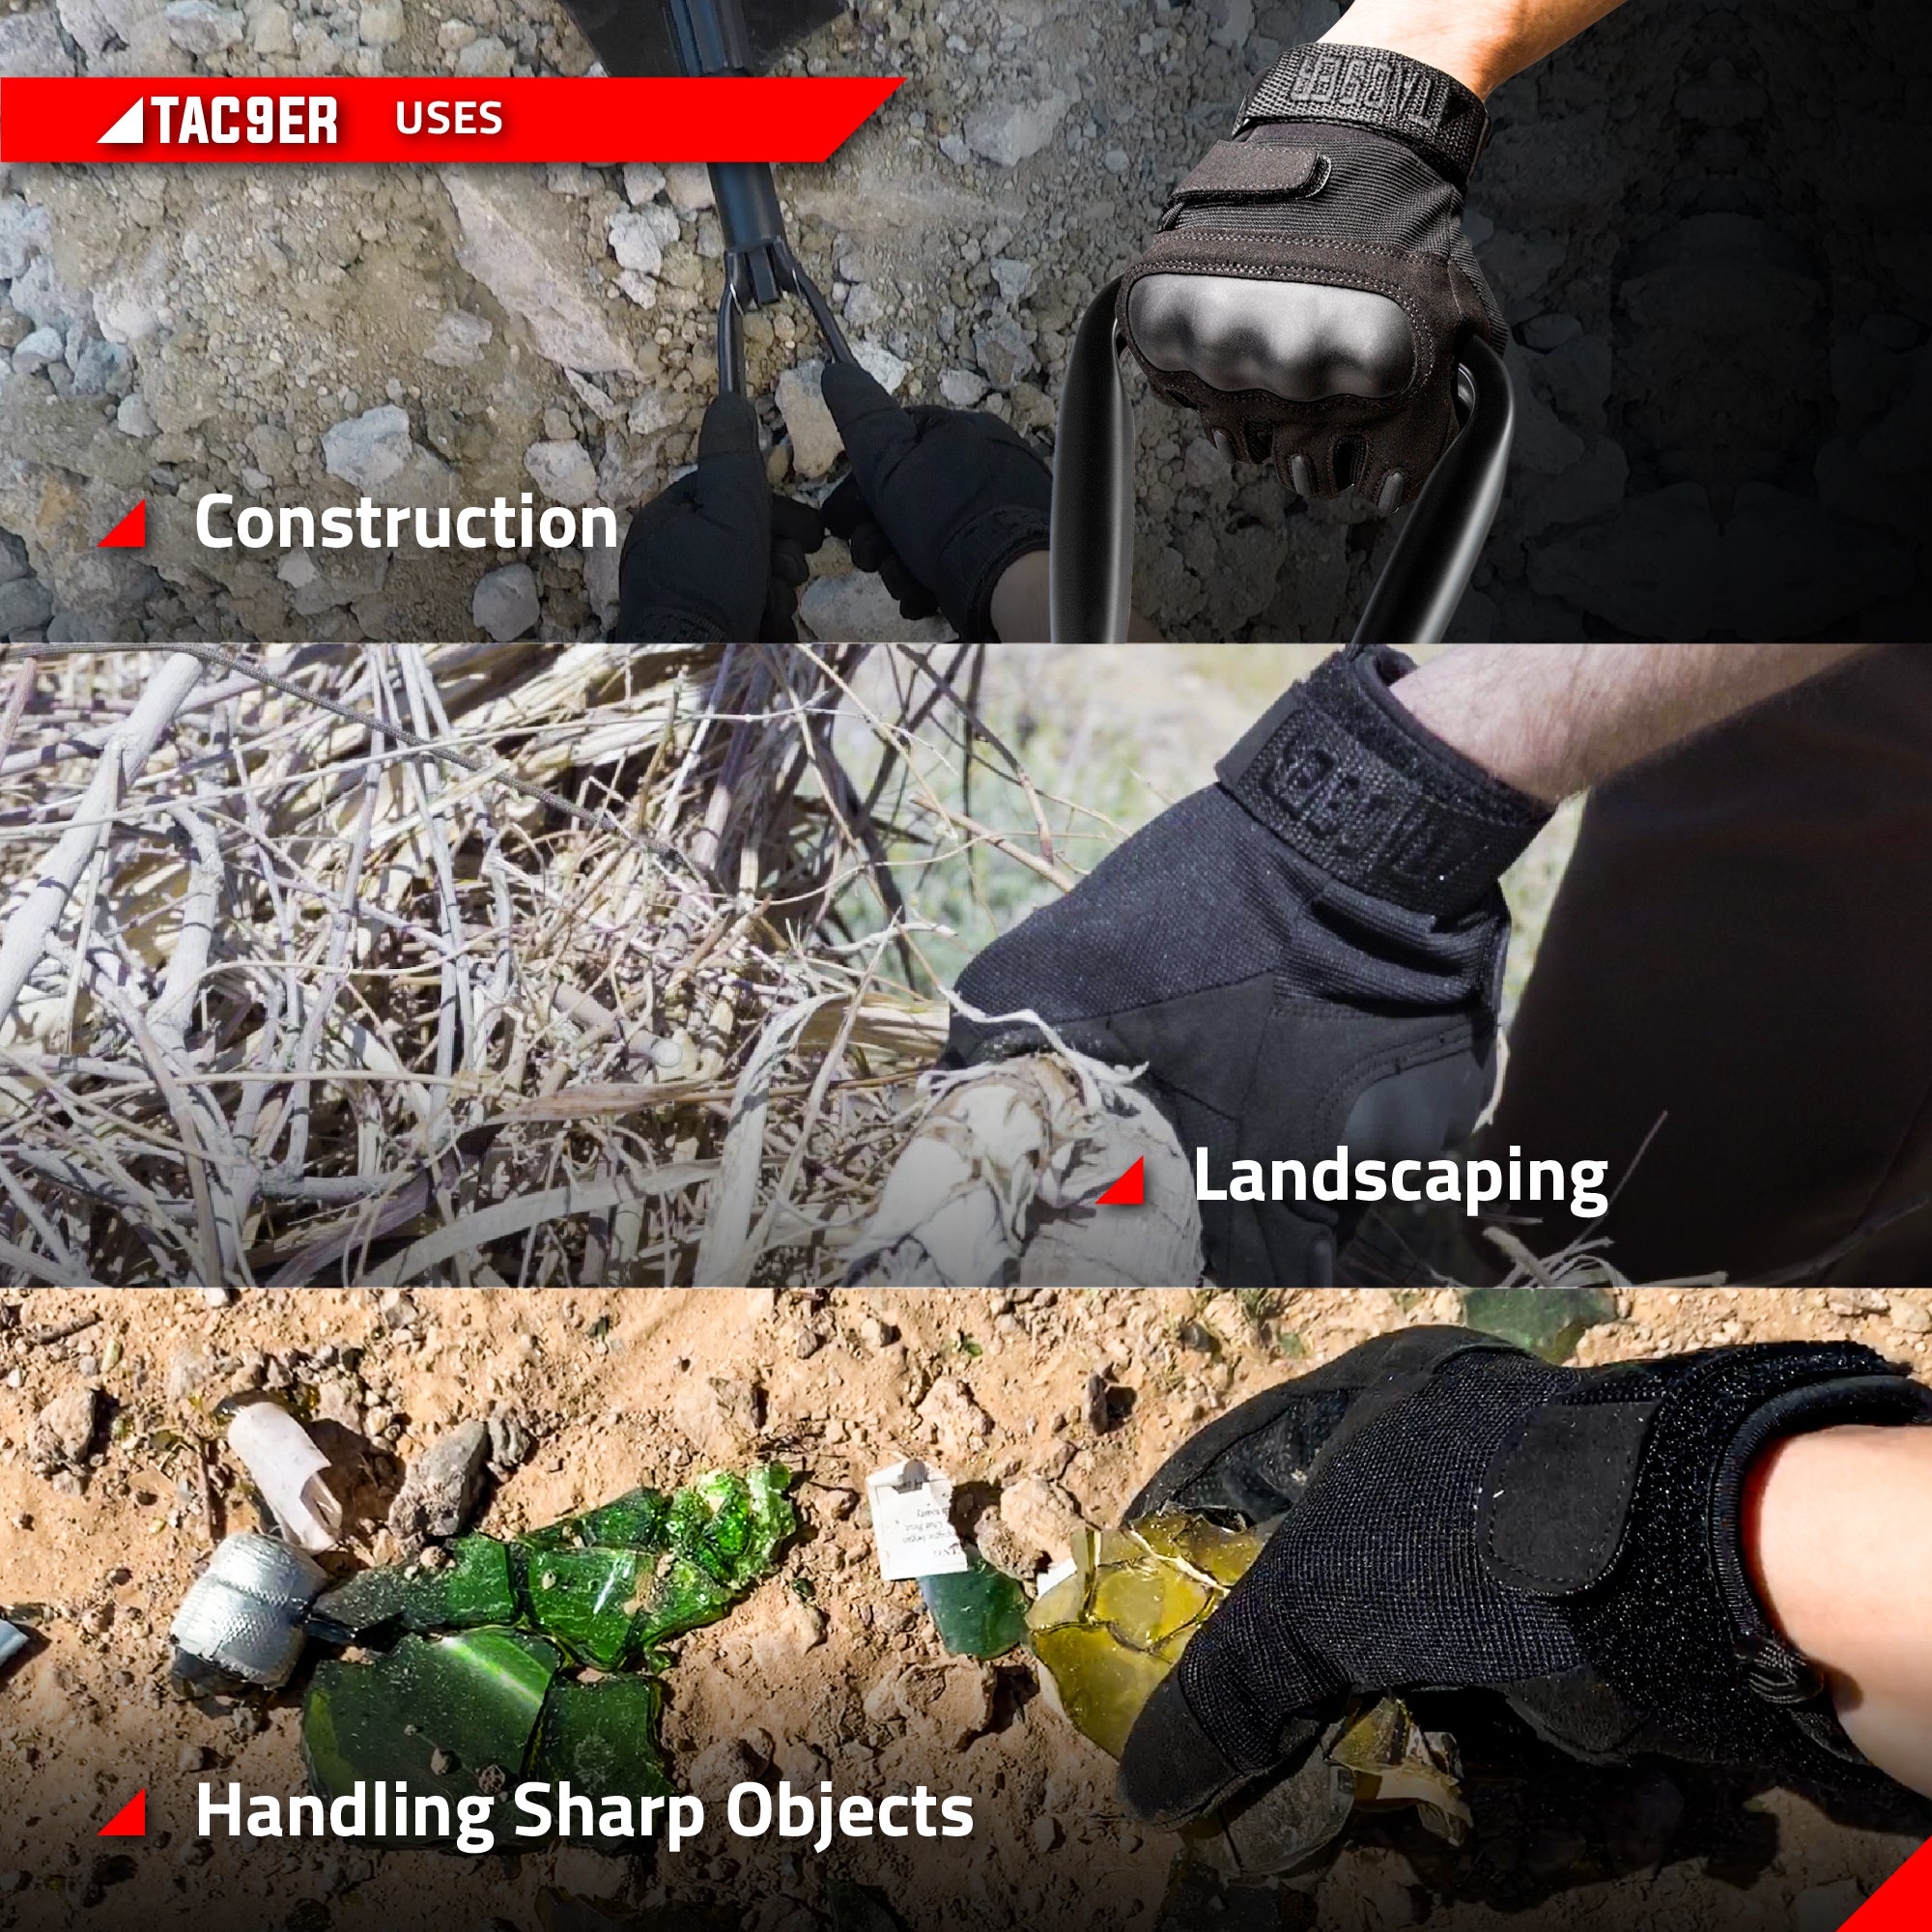 Alder - Tactical Gloves, Hand gloves